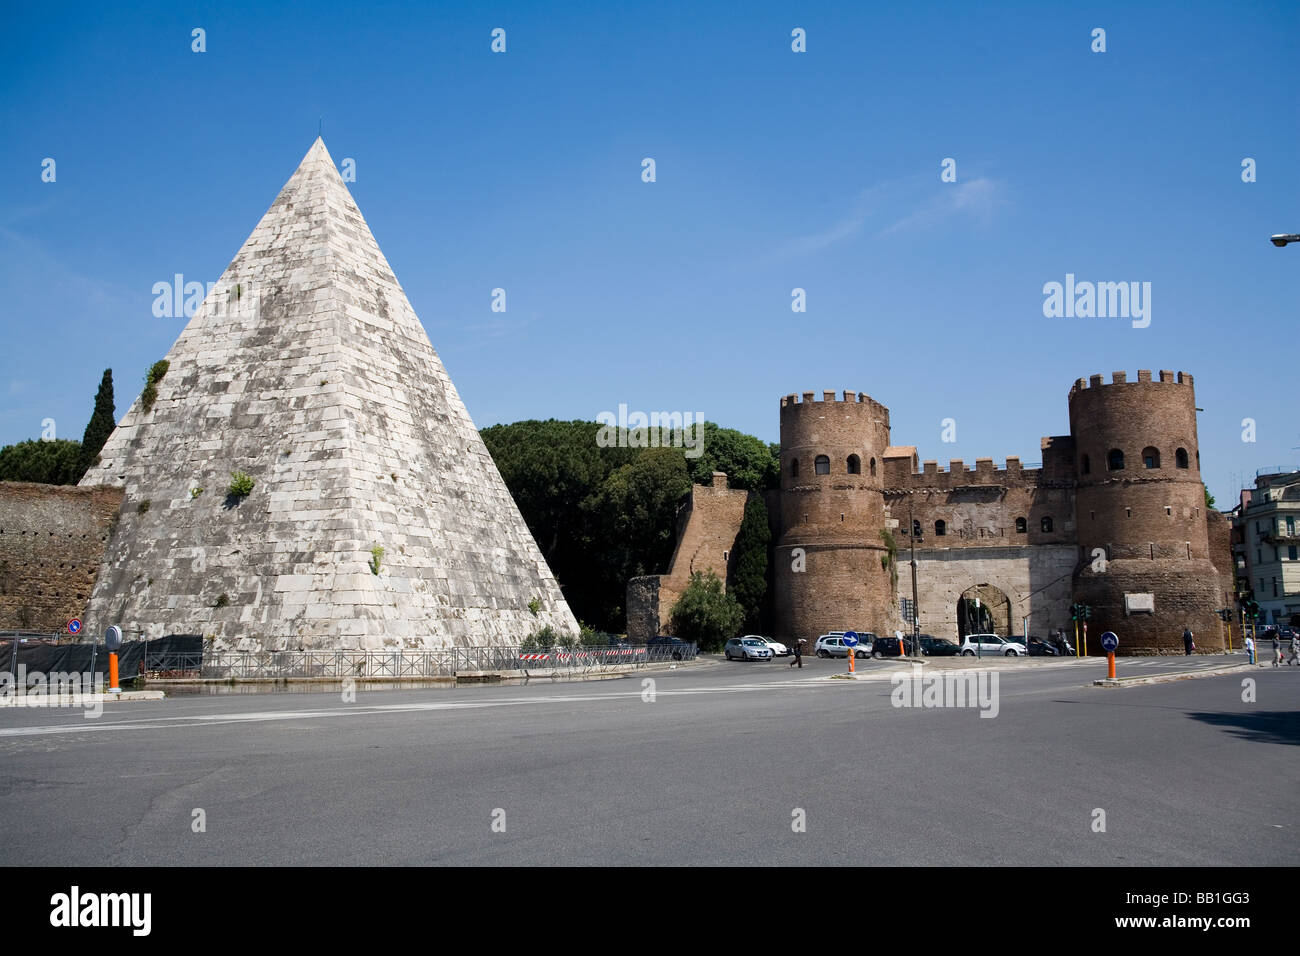 Pyramide de Cestius et Porta San Paolo, Rome, Italie, Europe Banque D'Images